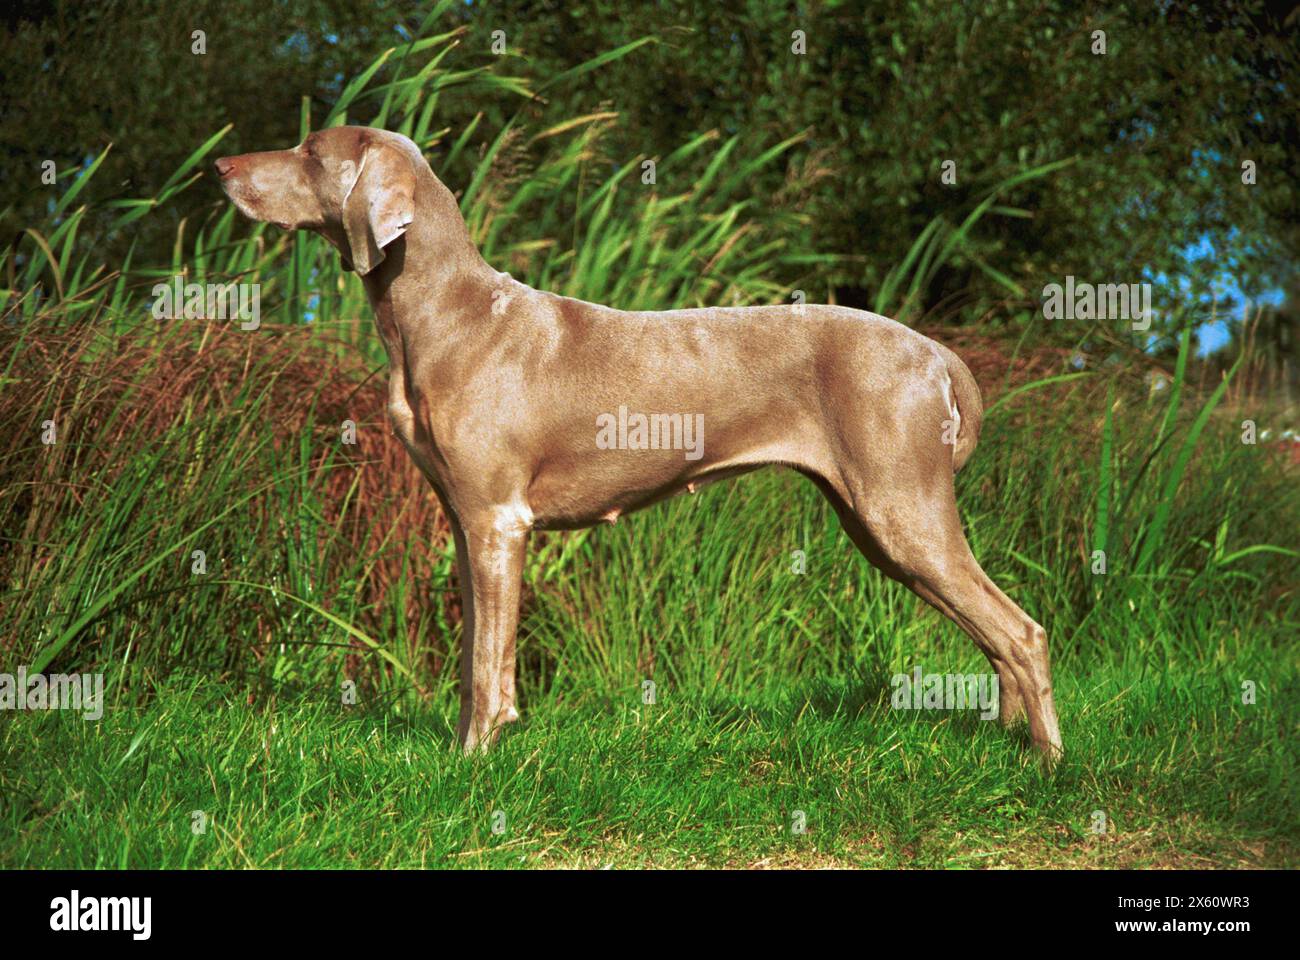 A Sleek Example of a Weimaraner Dog Alert in a Field Stock Photo